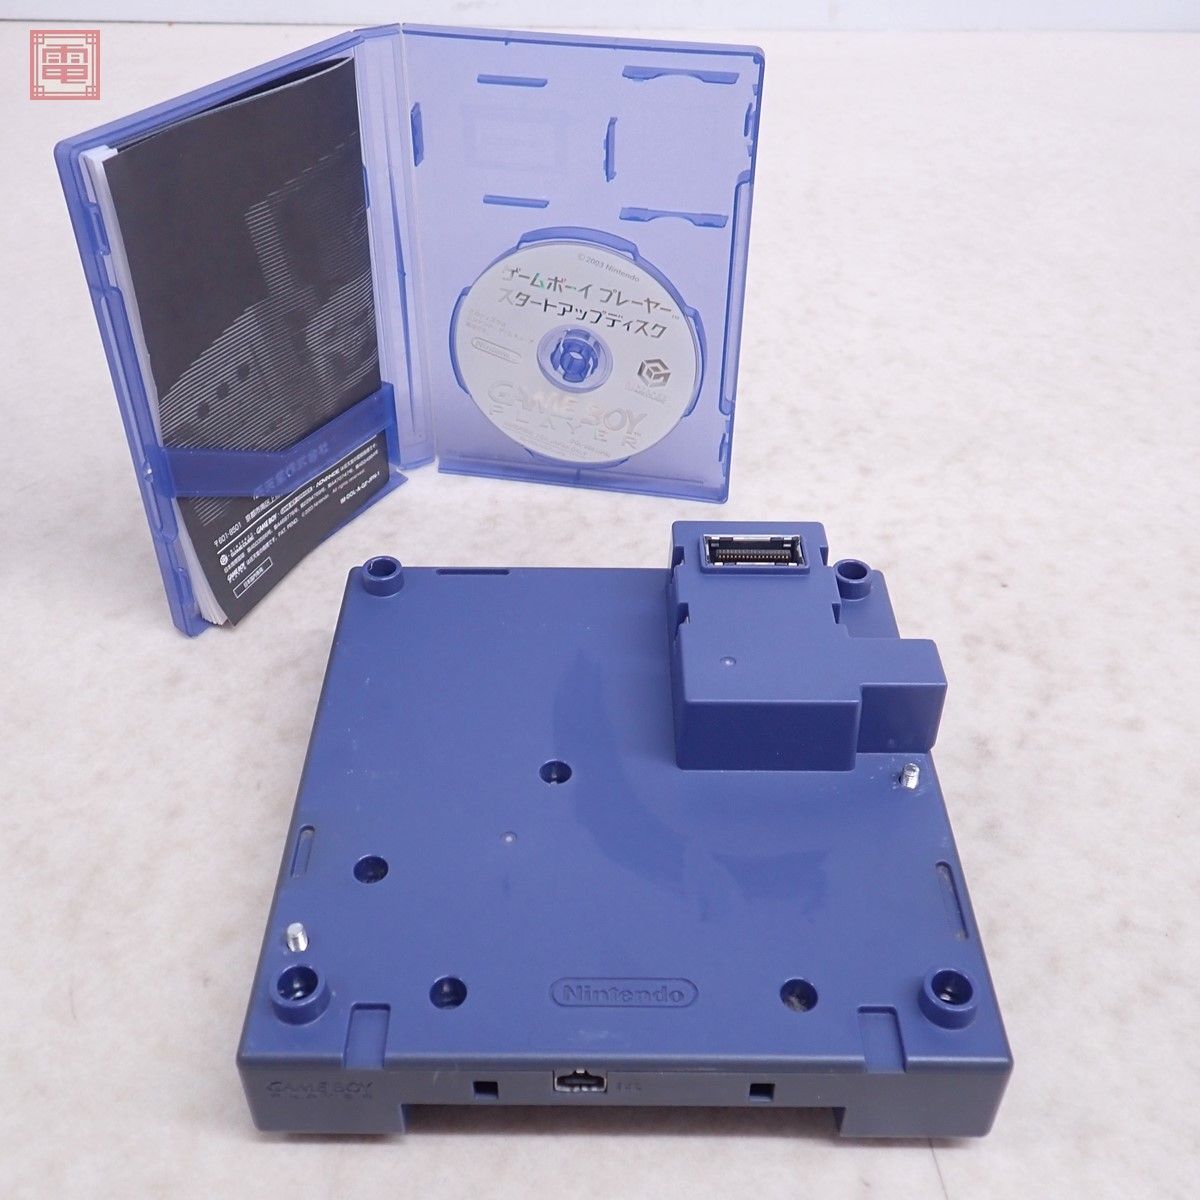  рабочий товар GC Game Boy плеер GAME BOY PLAYER корпус DOL-0017 violet Nintendo nintendo Nintendo диск / с руководством пользователя [10